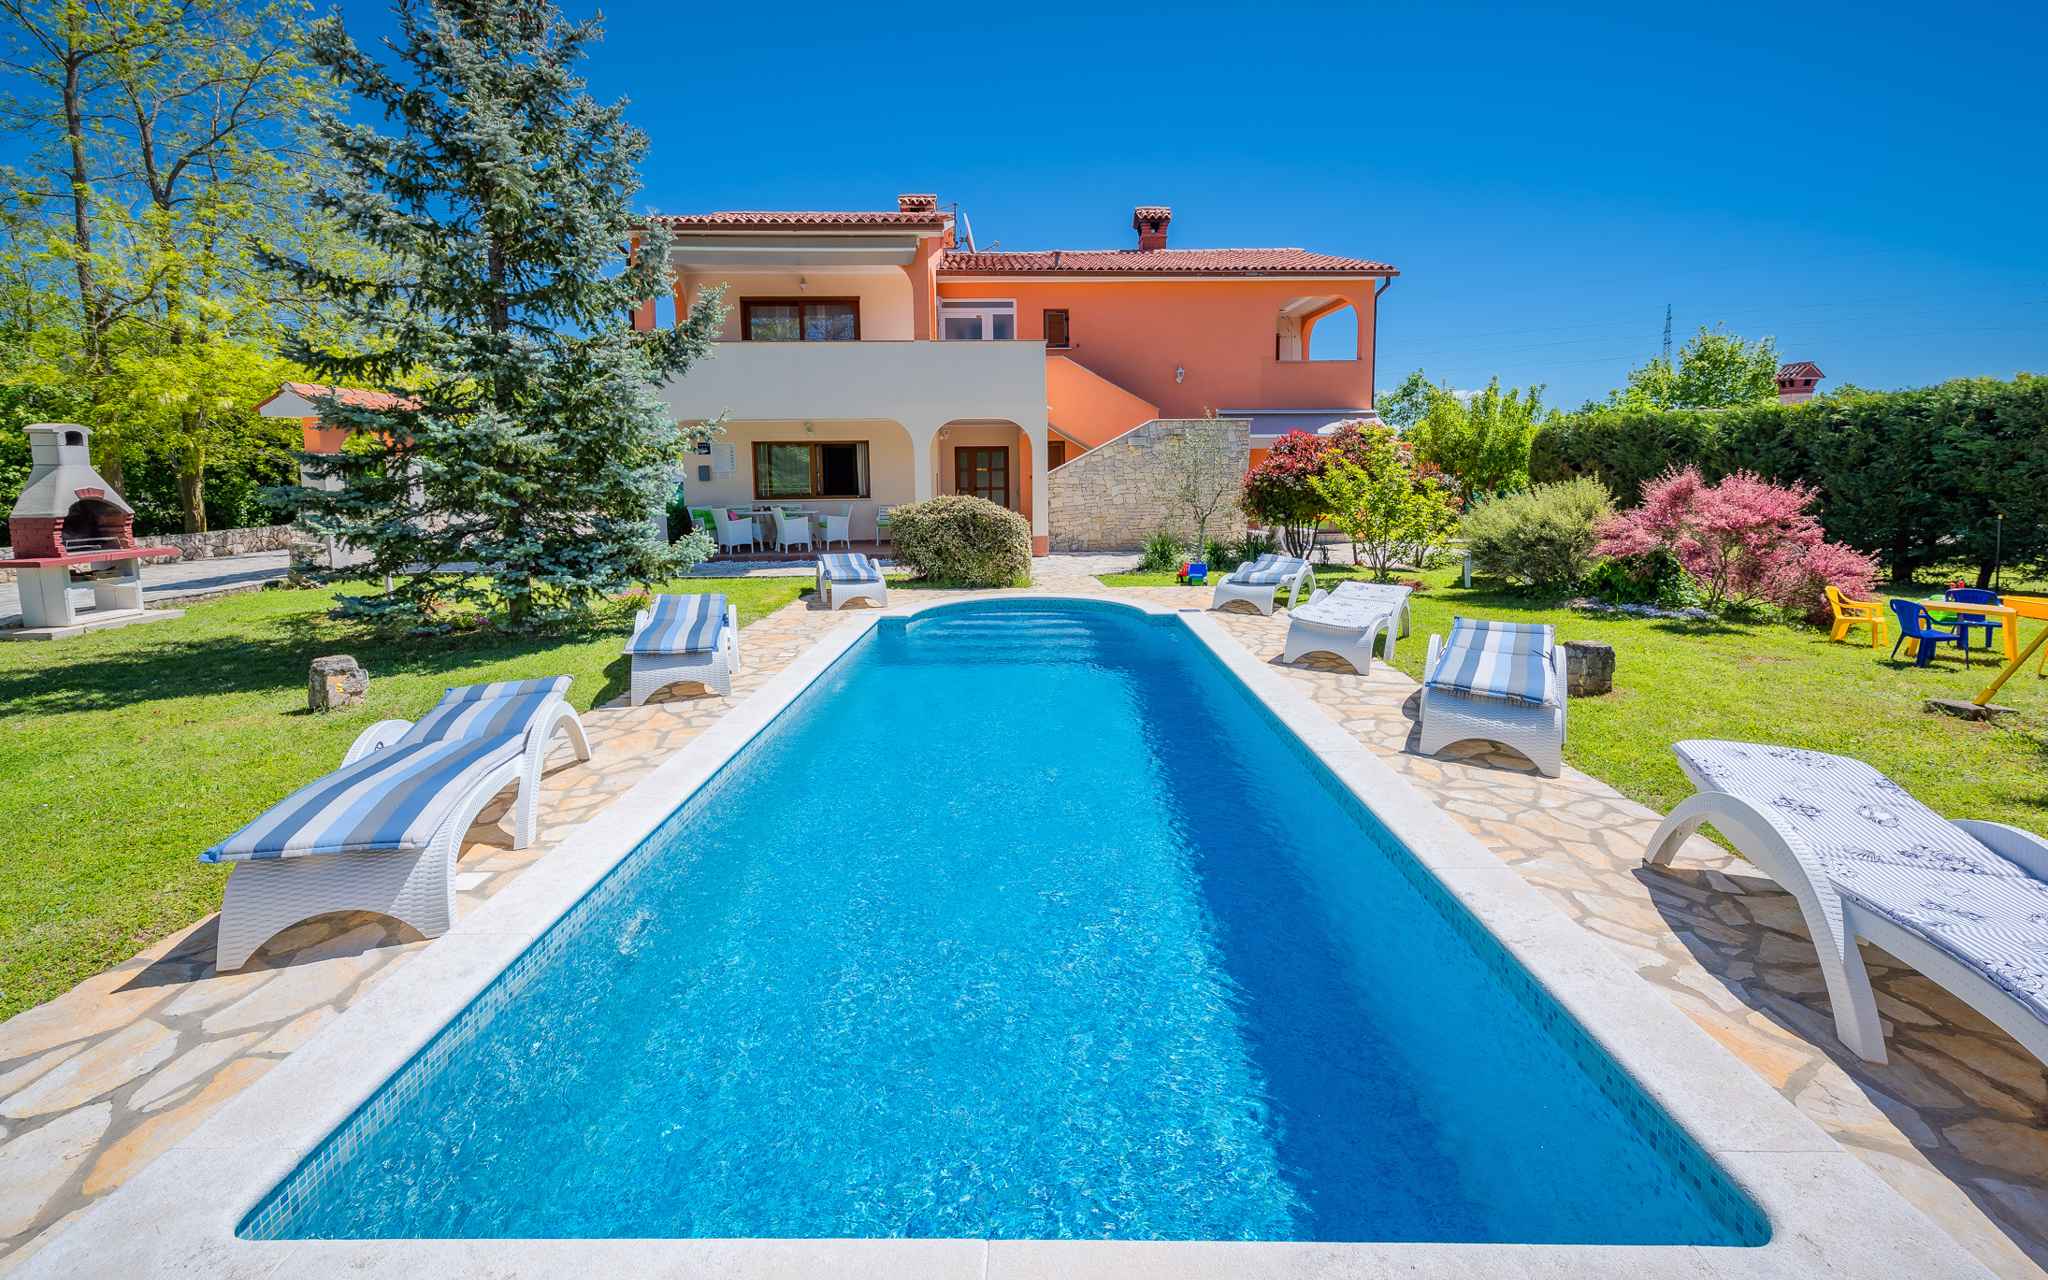 Villa mit Pool und Terrasse Ferienhaus in Kroatien